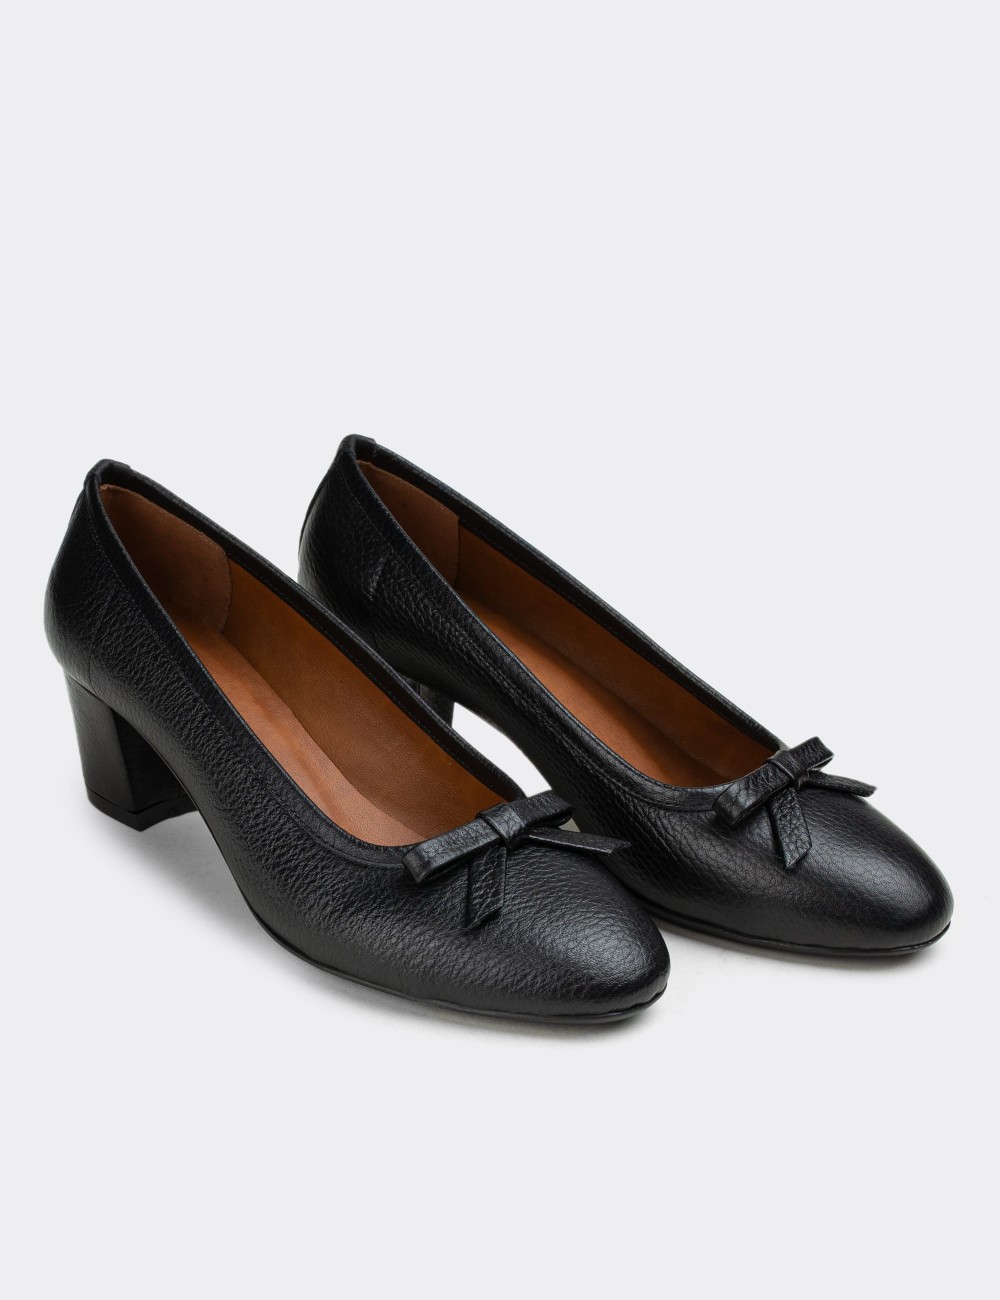 Black  Leather Lace-up Shoes - E1471ZSYHC02